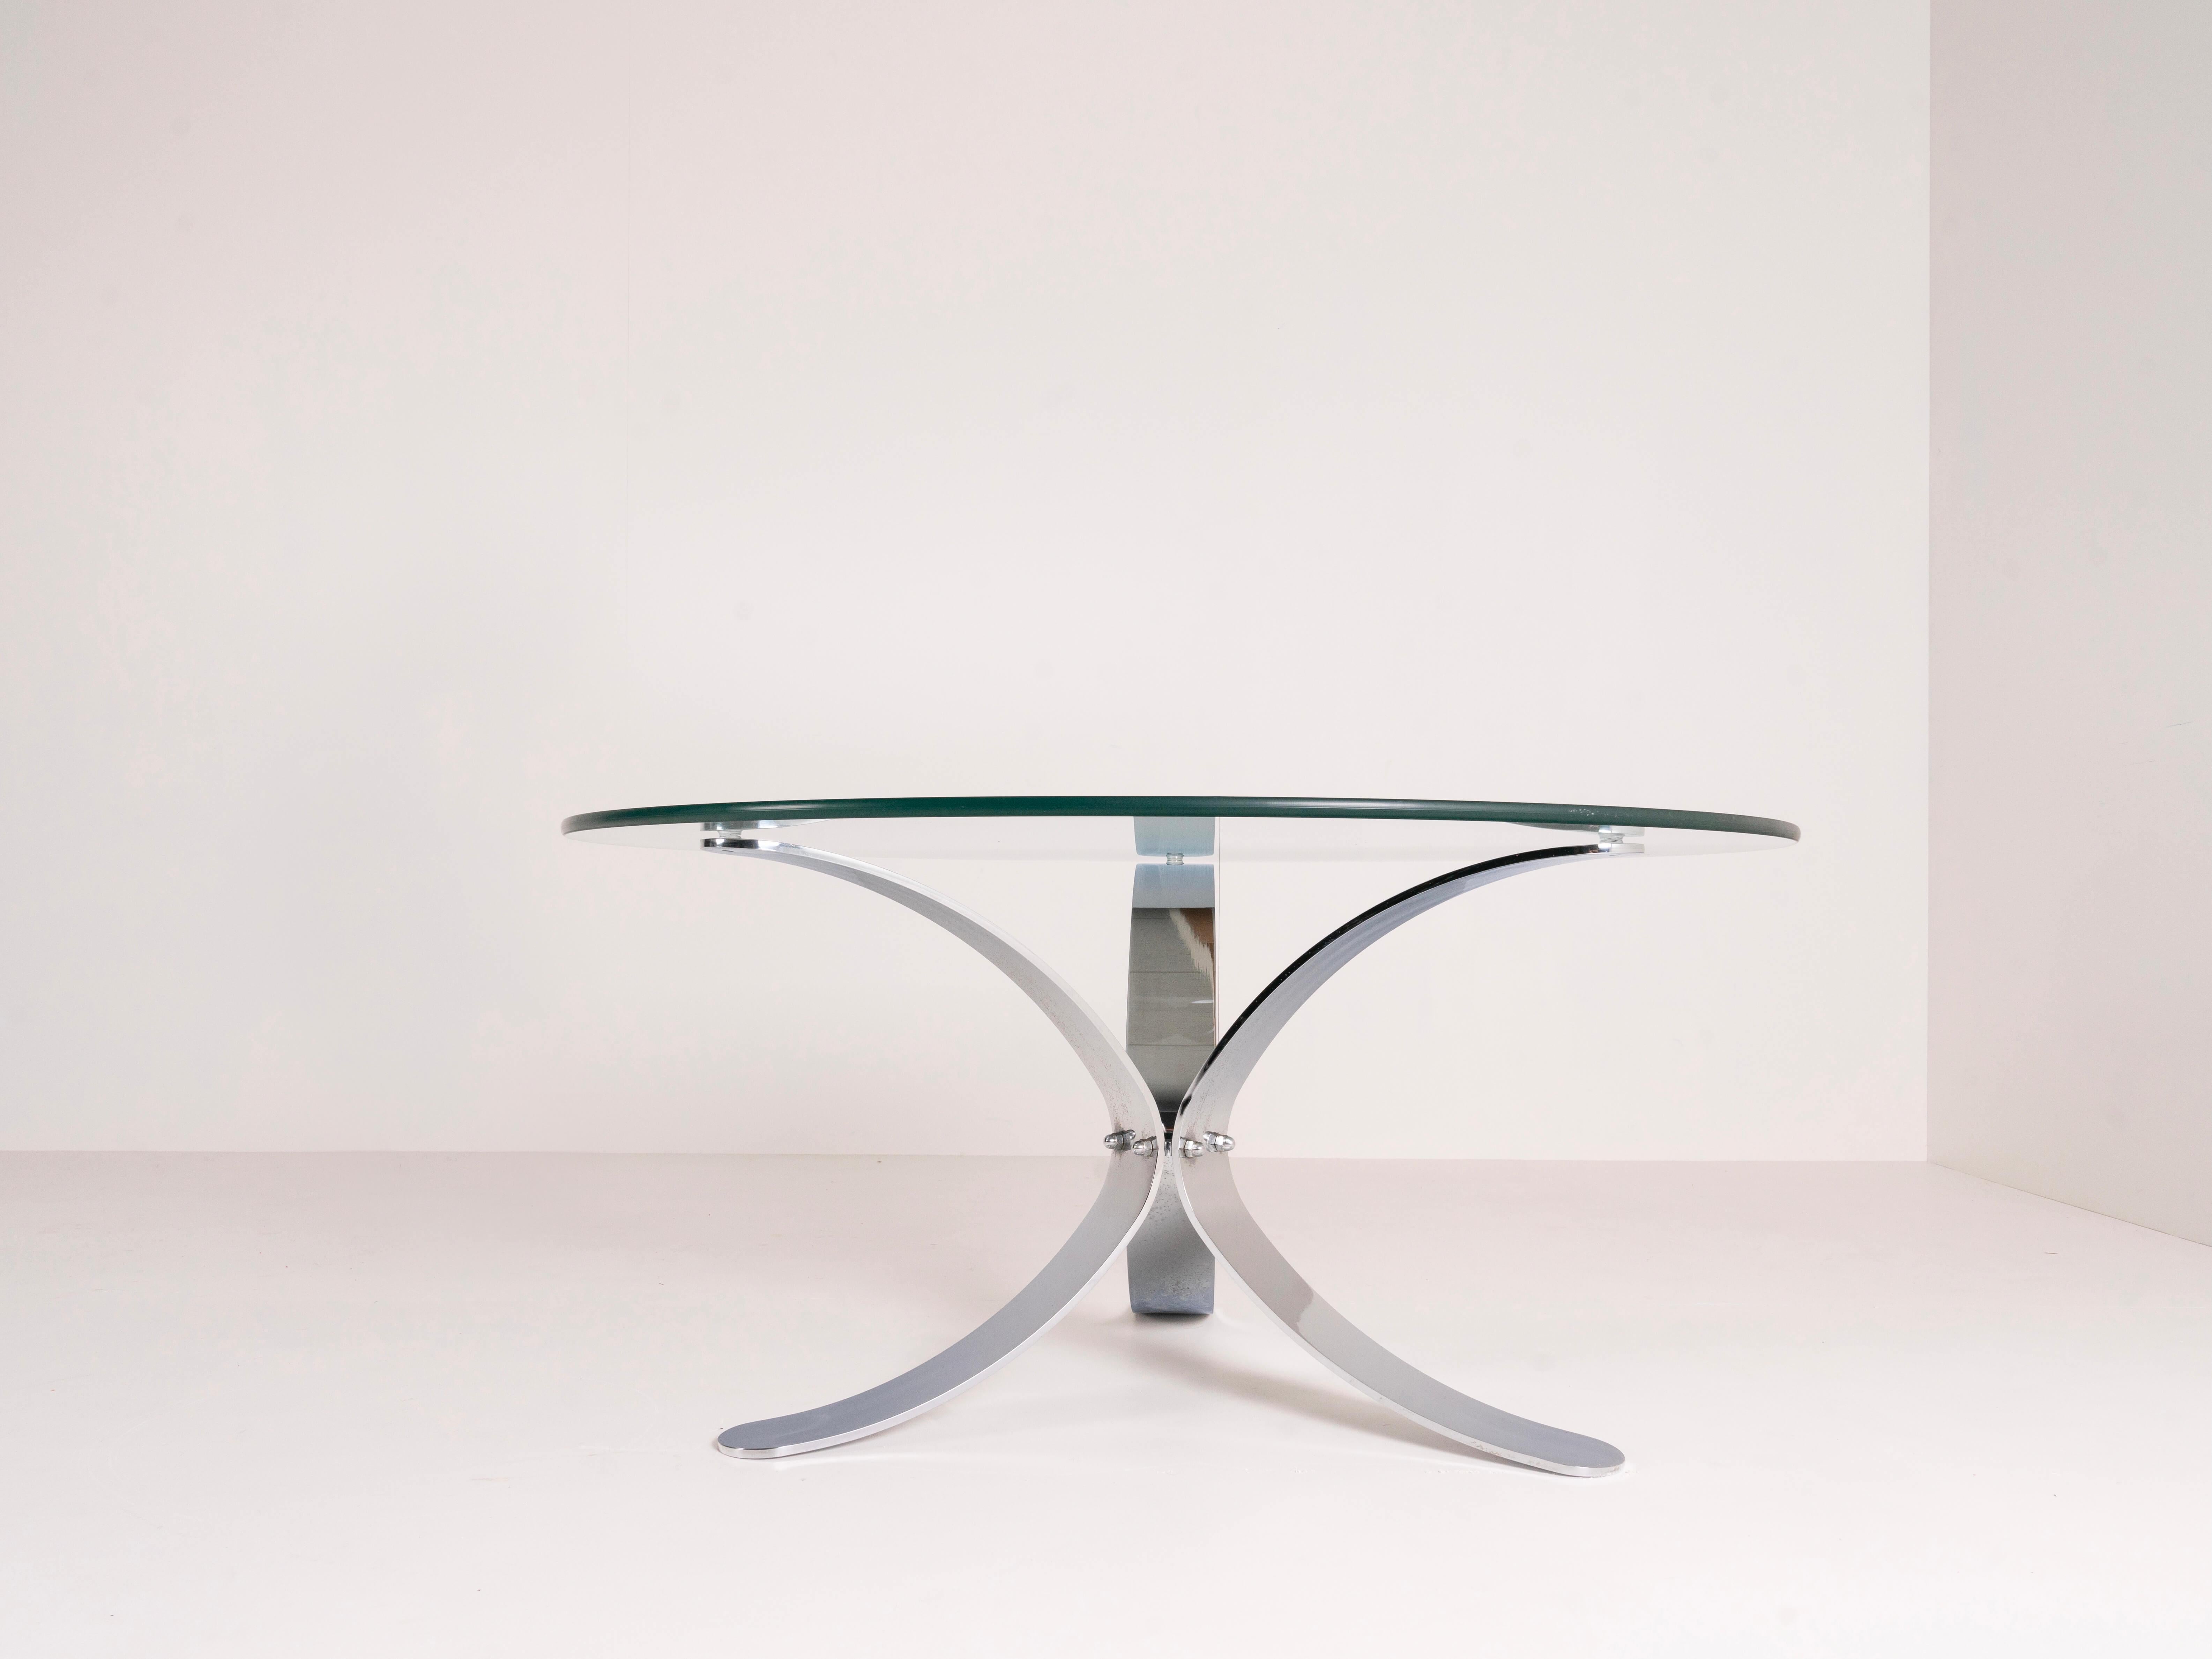 Belle table basse dans le style de Roger Sprunger des États-Unis vers 1970. Cette table basse possède une base chromée qui offre trois points d'appui pour le plateau en verre. Il a un aspect et un toucher modernistes et est en bon état. Le chrome